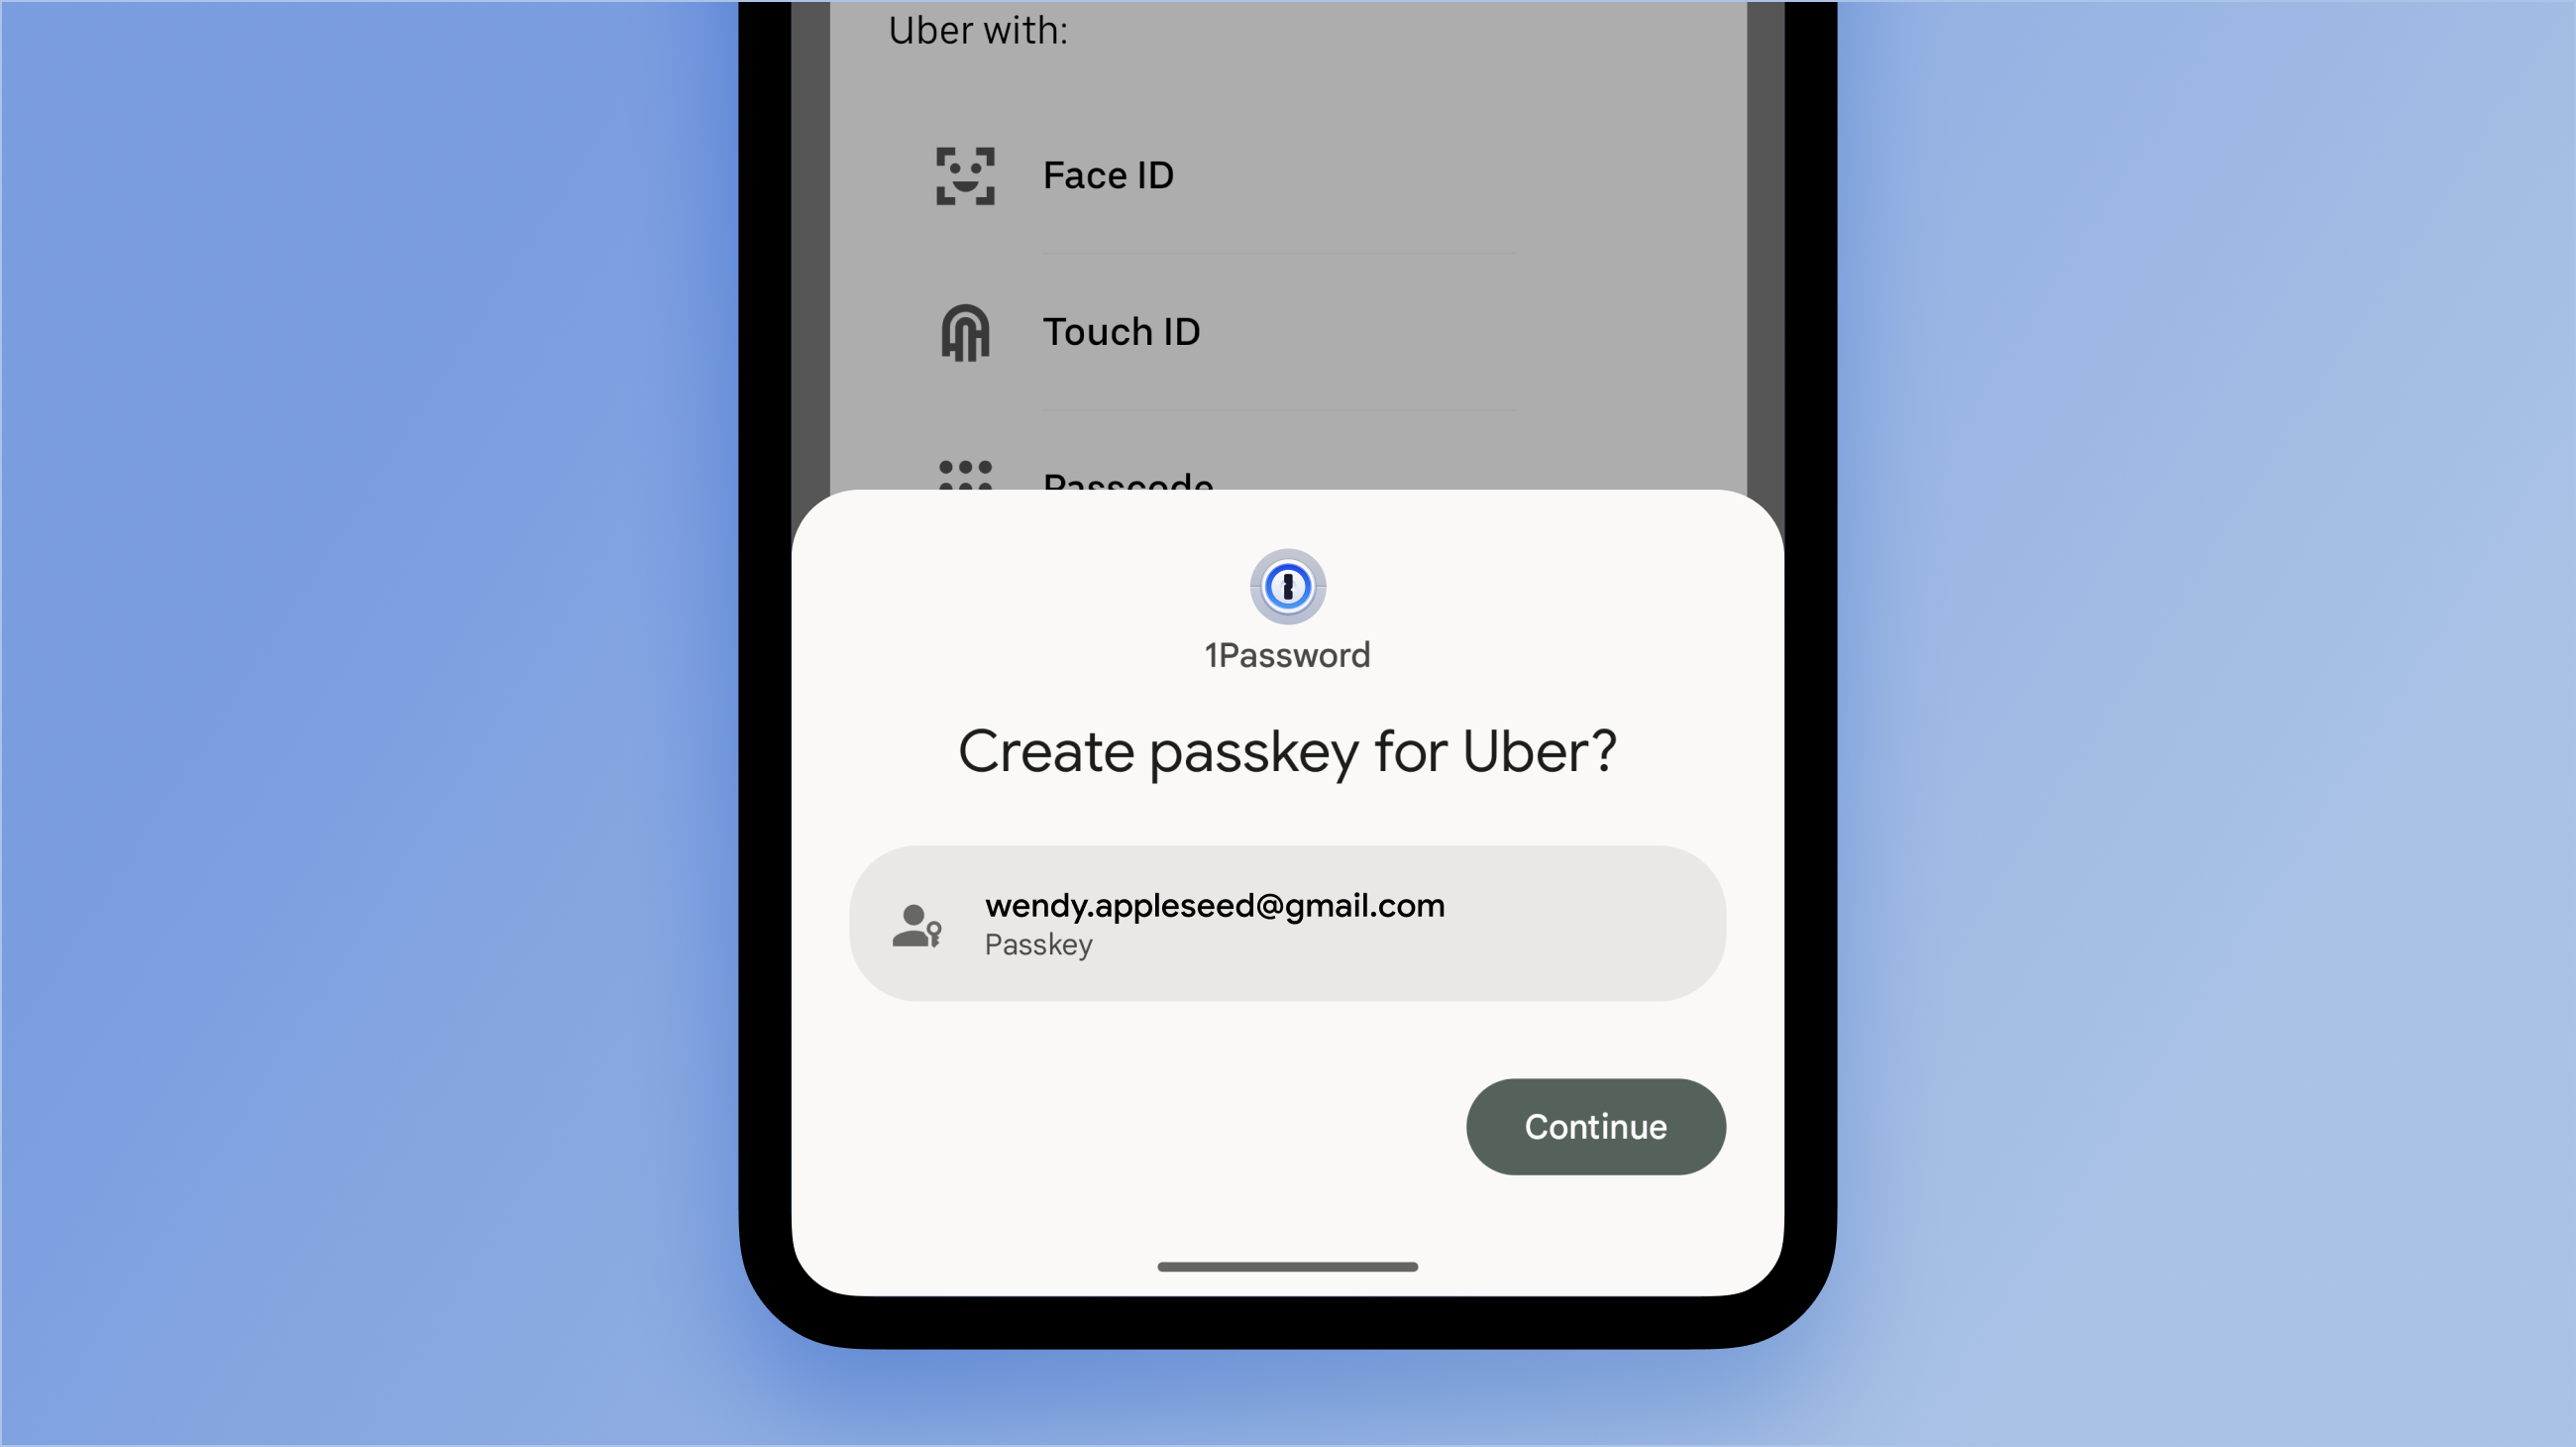 Captura de tela da configuração da senha 1Password no aplicativo Uber